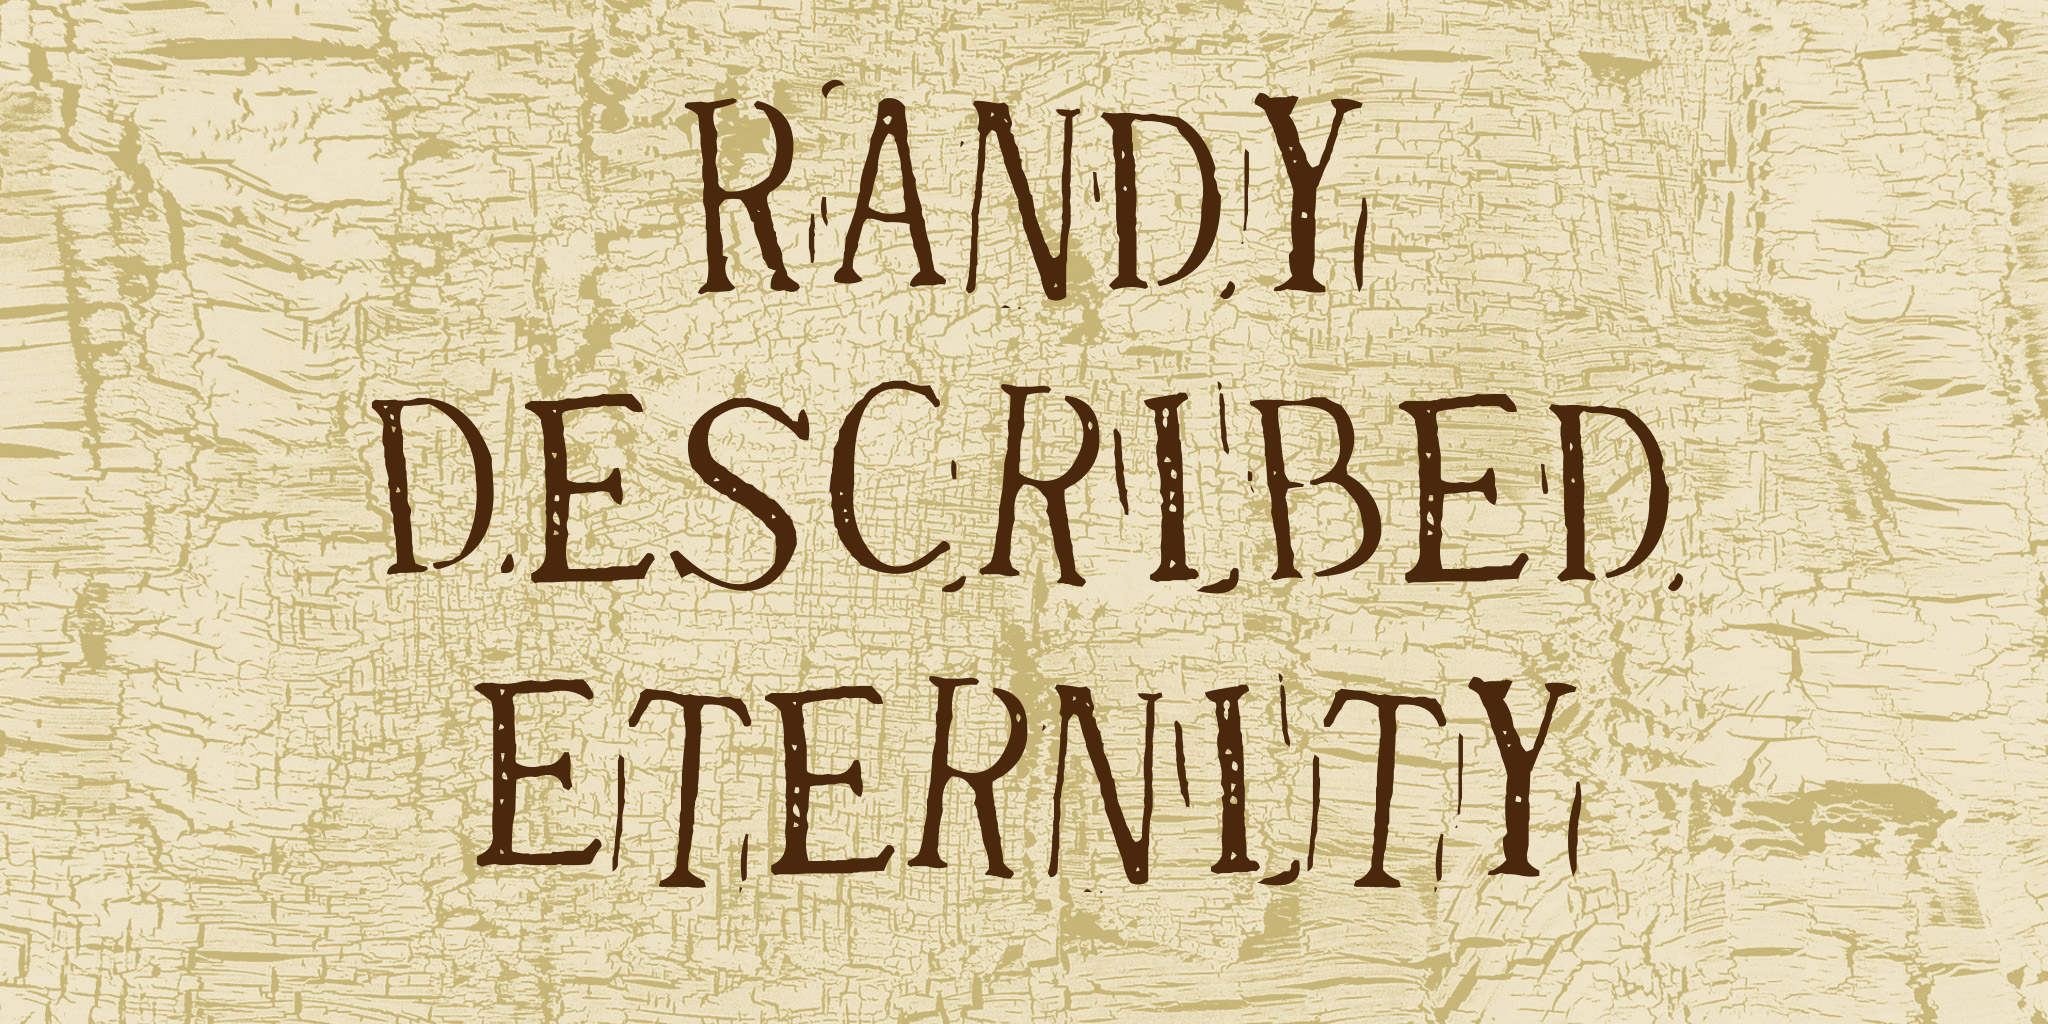 Randy Described Eternity